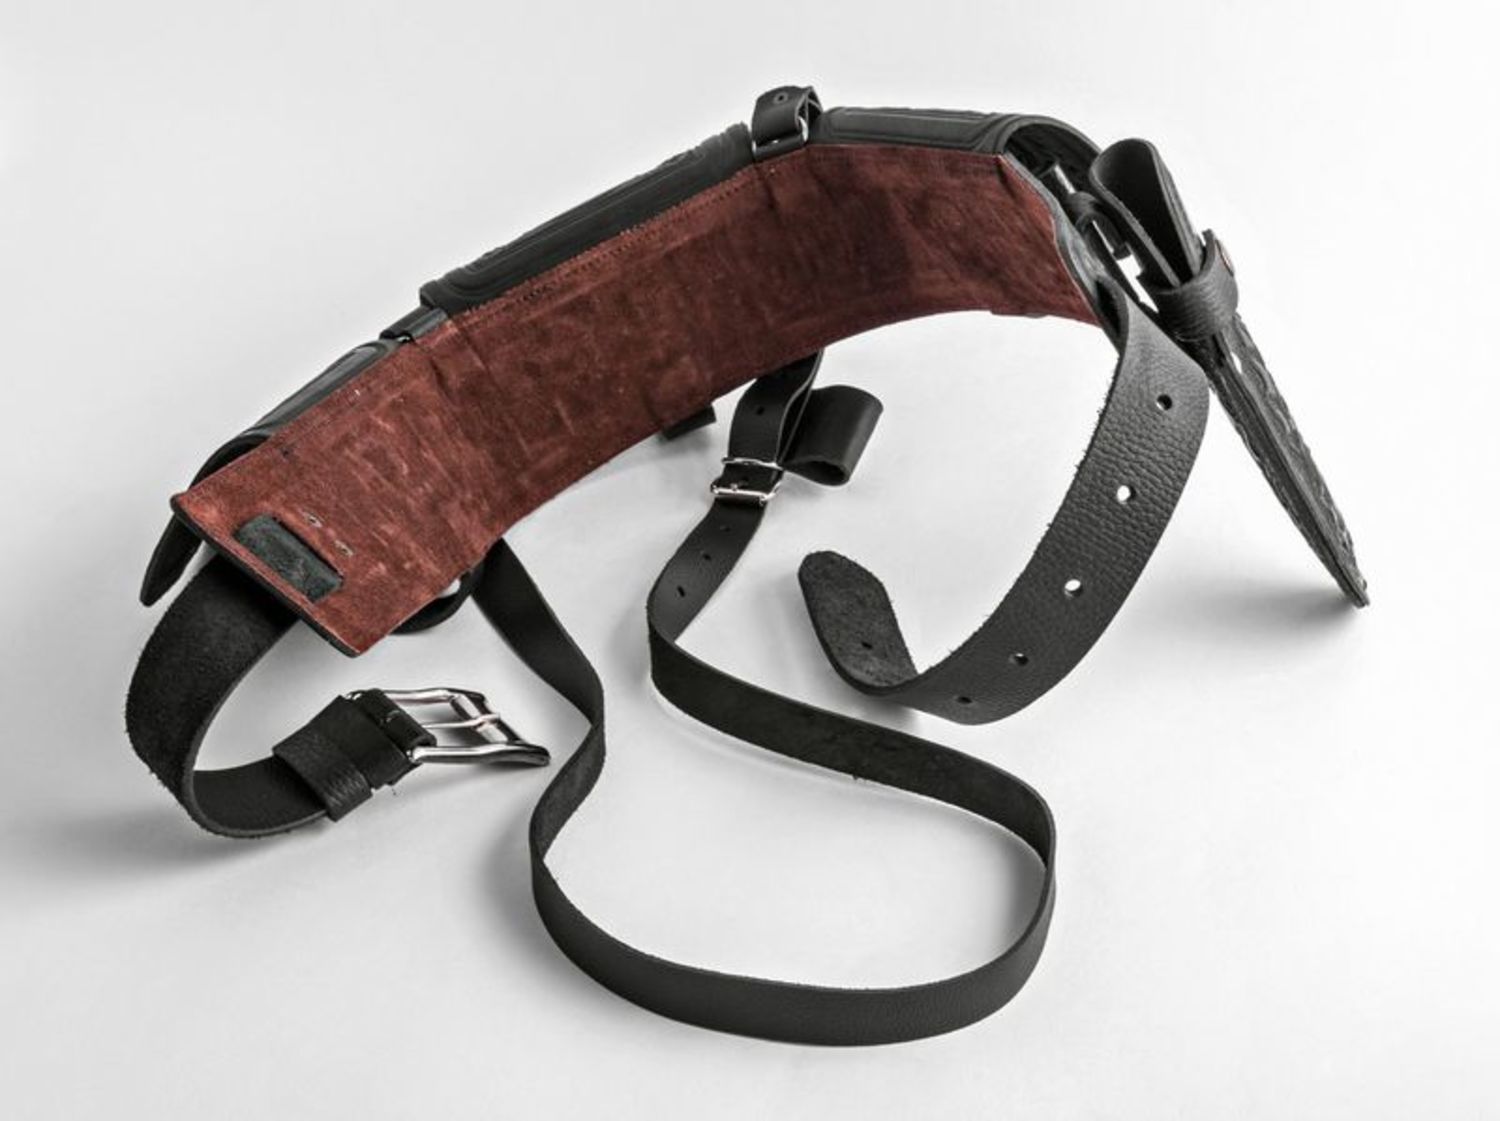 Leather belt photo 5